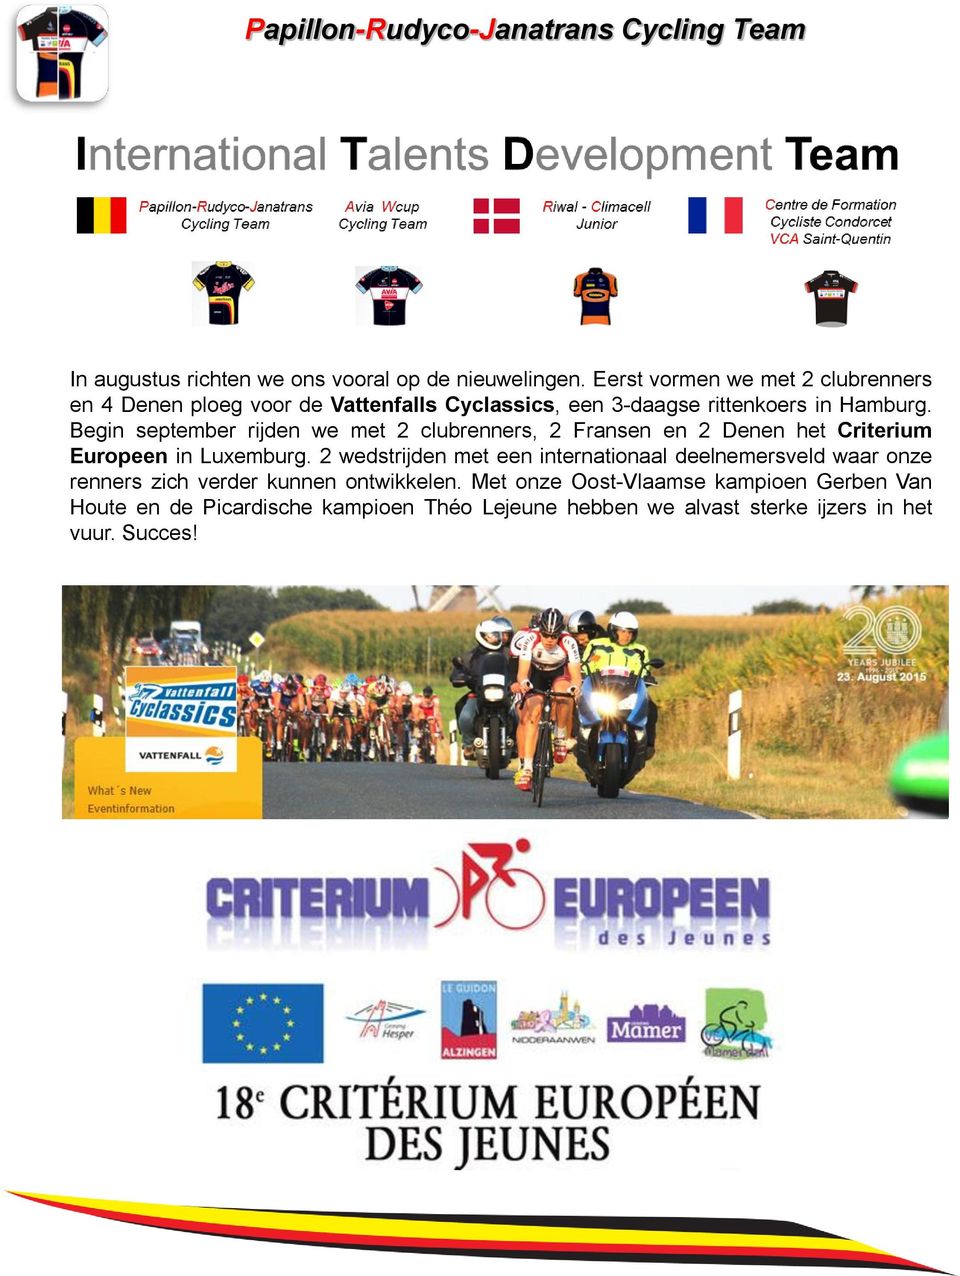 Begin september rijden we met 2 clubrenners, 2 Fransen en 2 Denen het Criterium Europeen in Luxemburg.